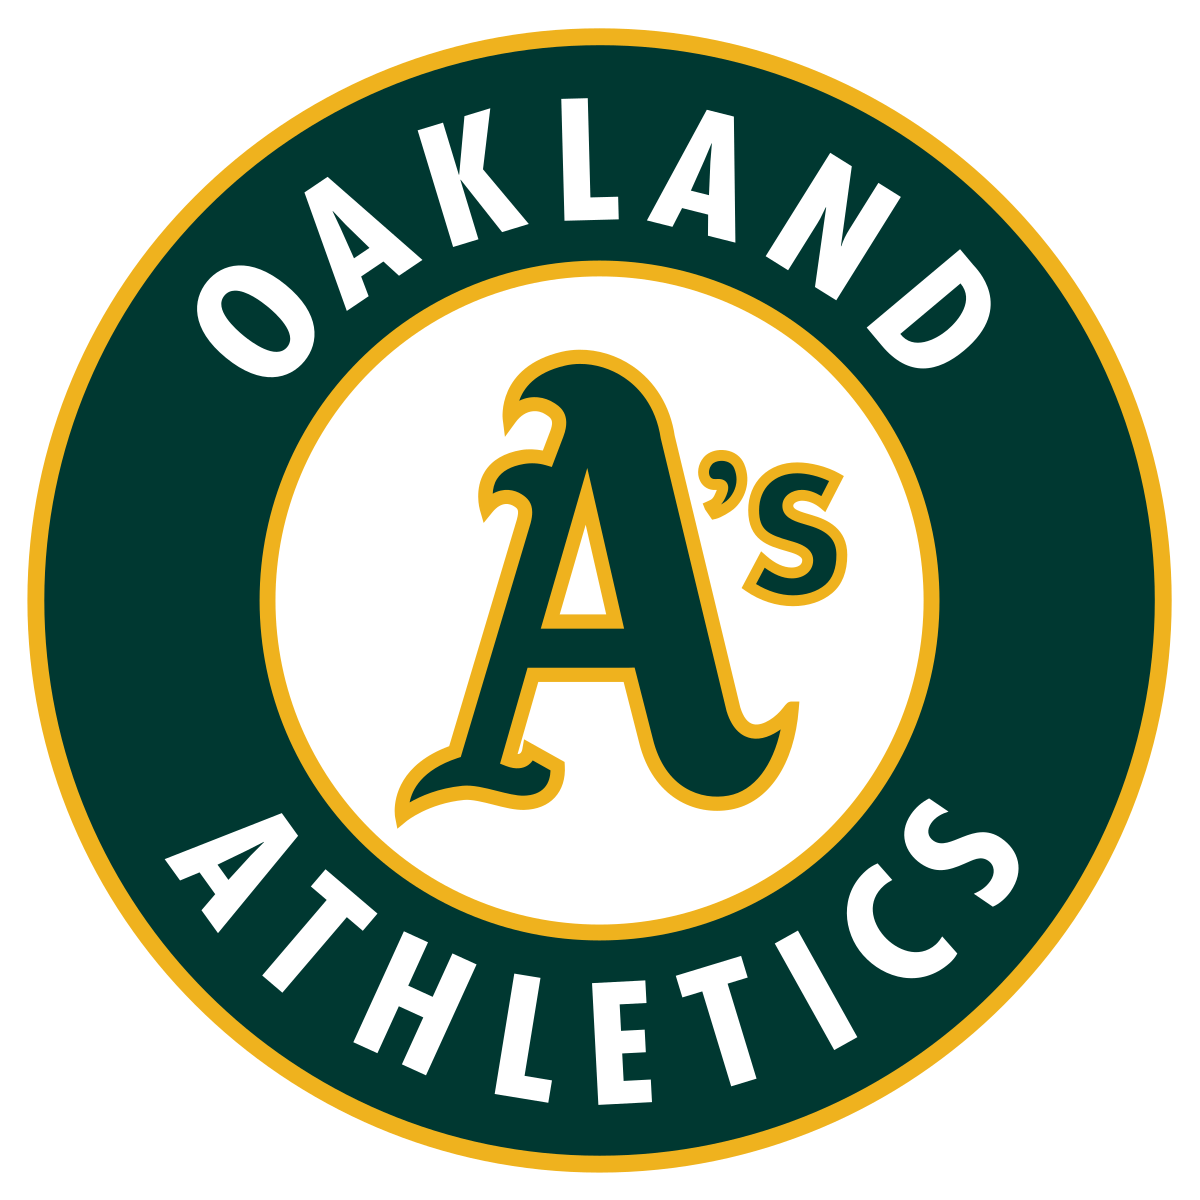 Black and White Baseball Logo - Oakland Athletics